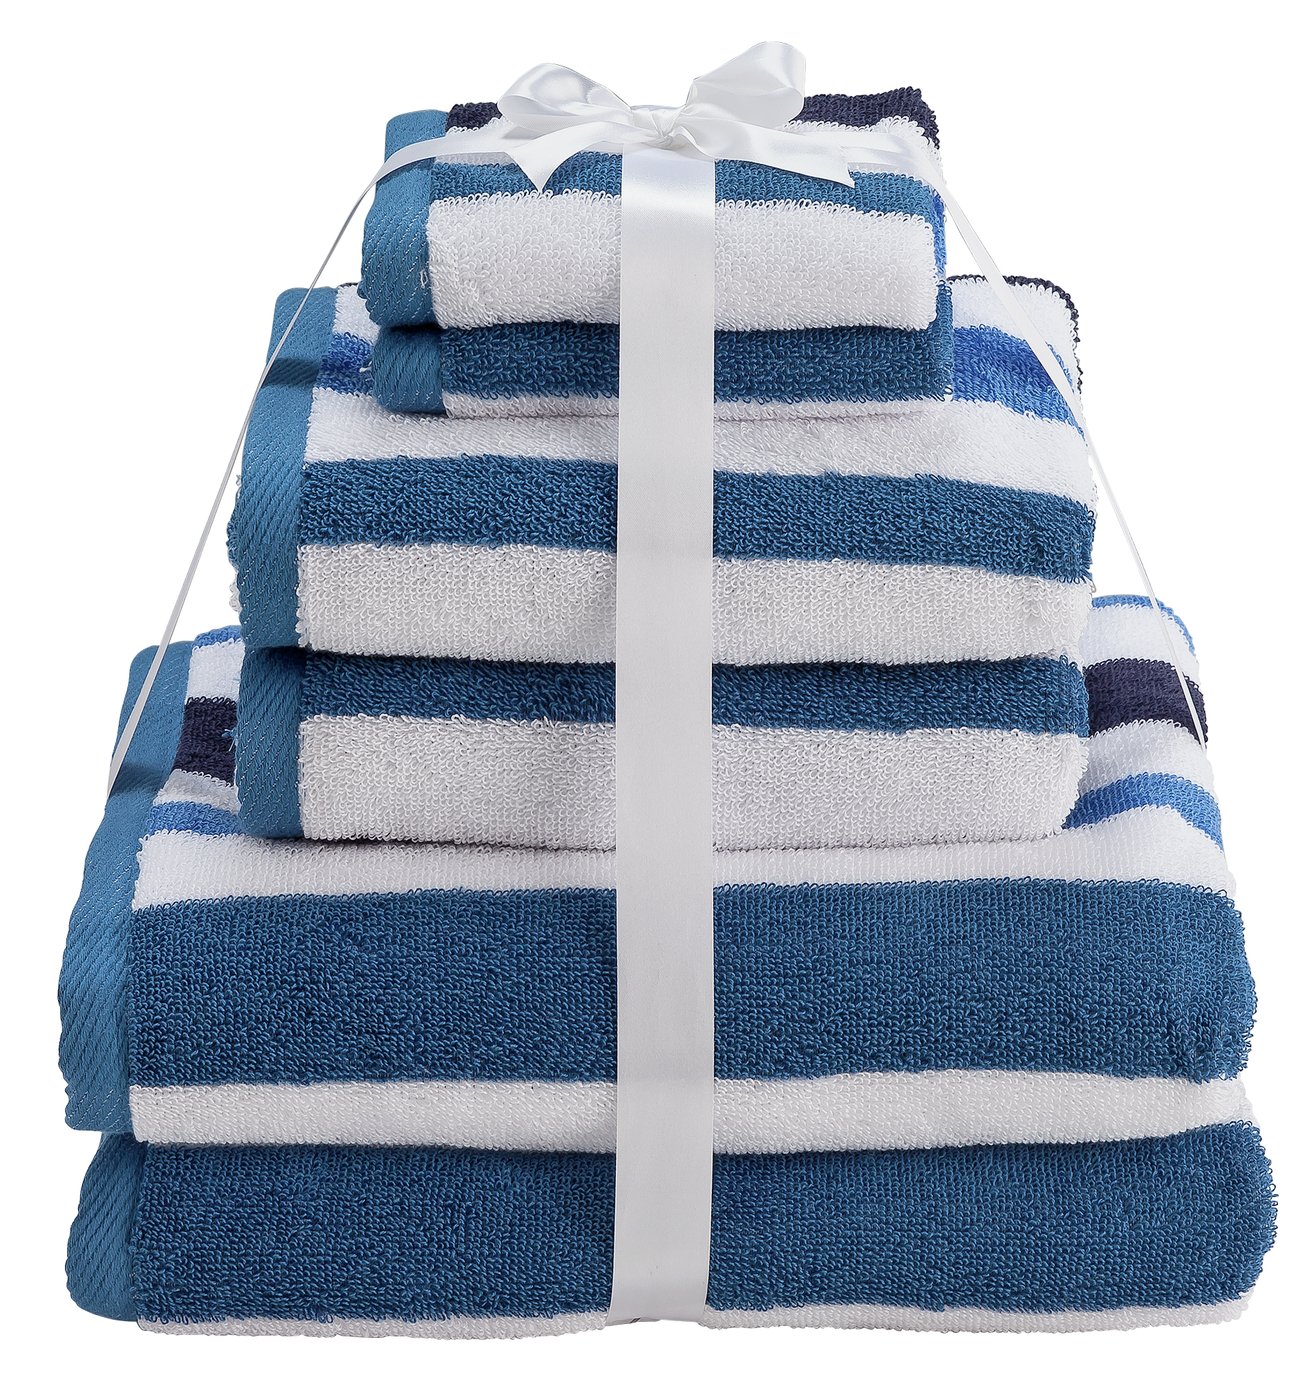 Argos Home 6 Piece Towel Bale review